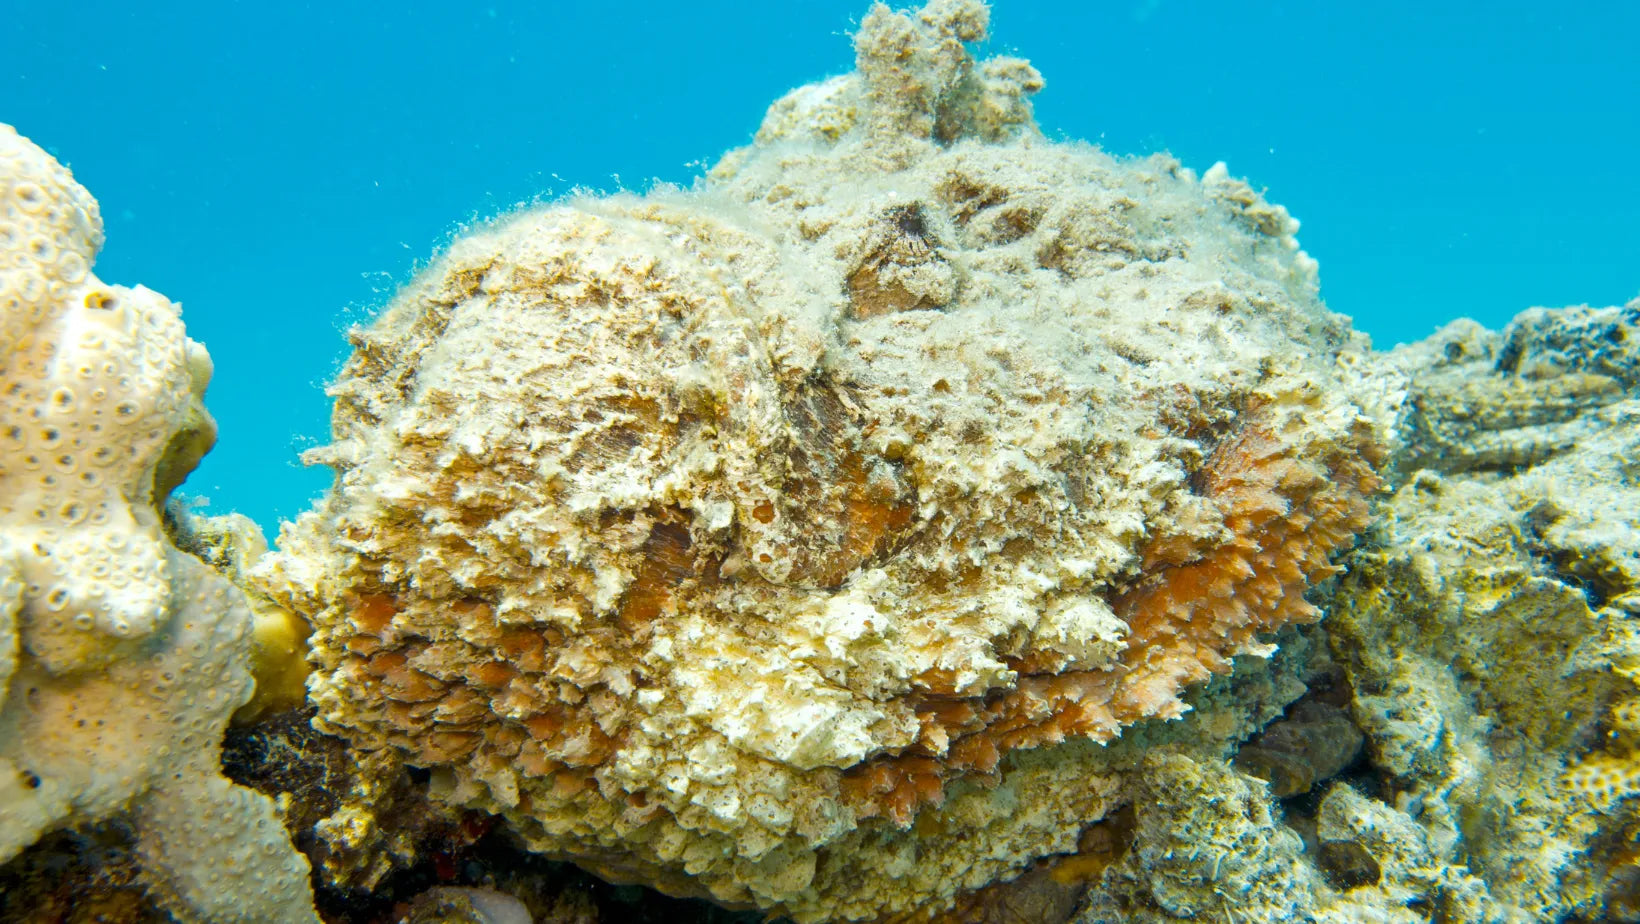 Pez piedra: tímido, venenoso y casi invisible habitante del arrecife